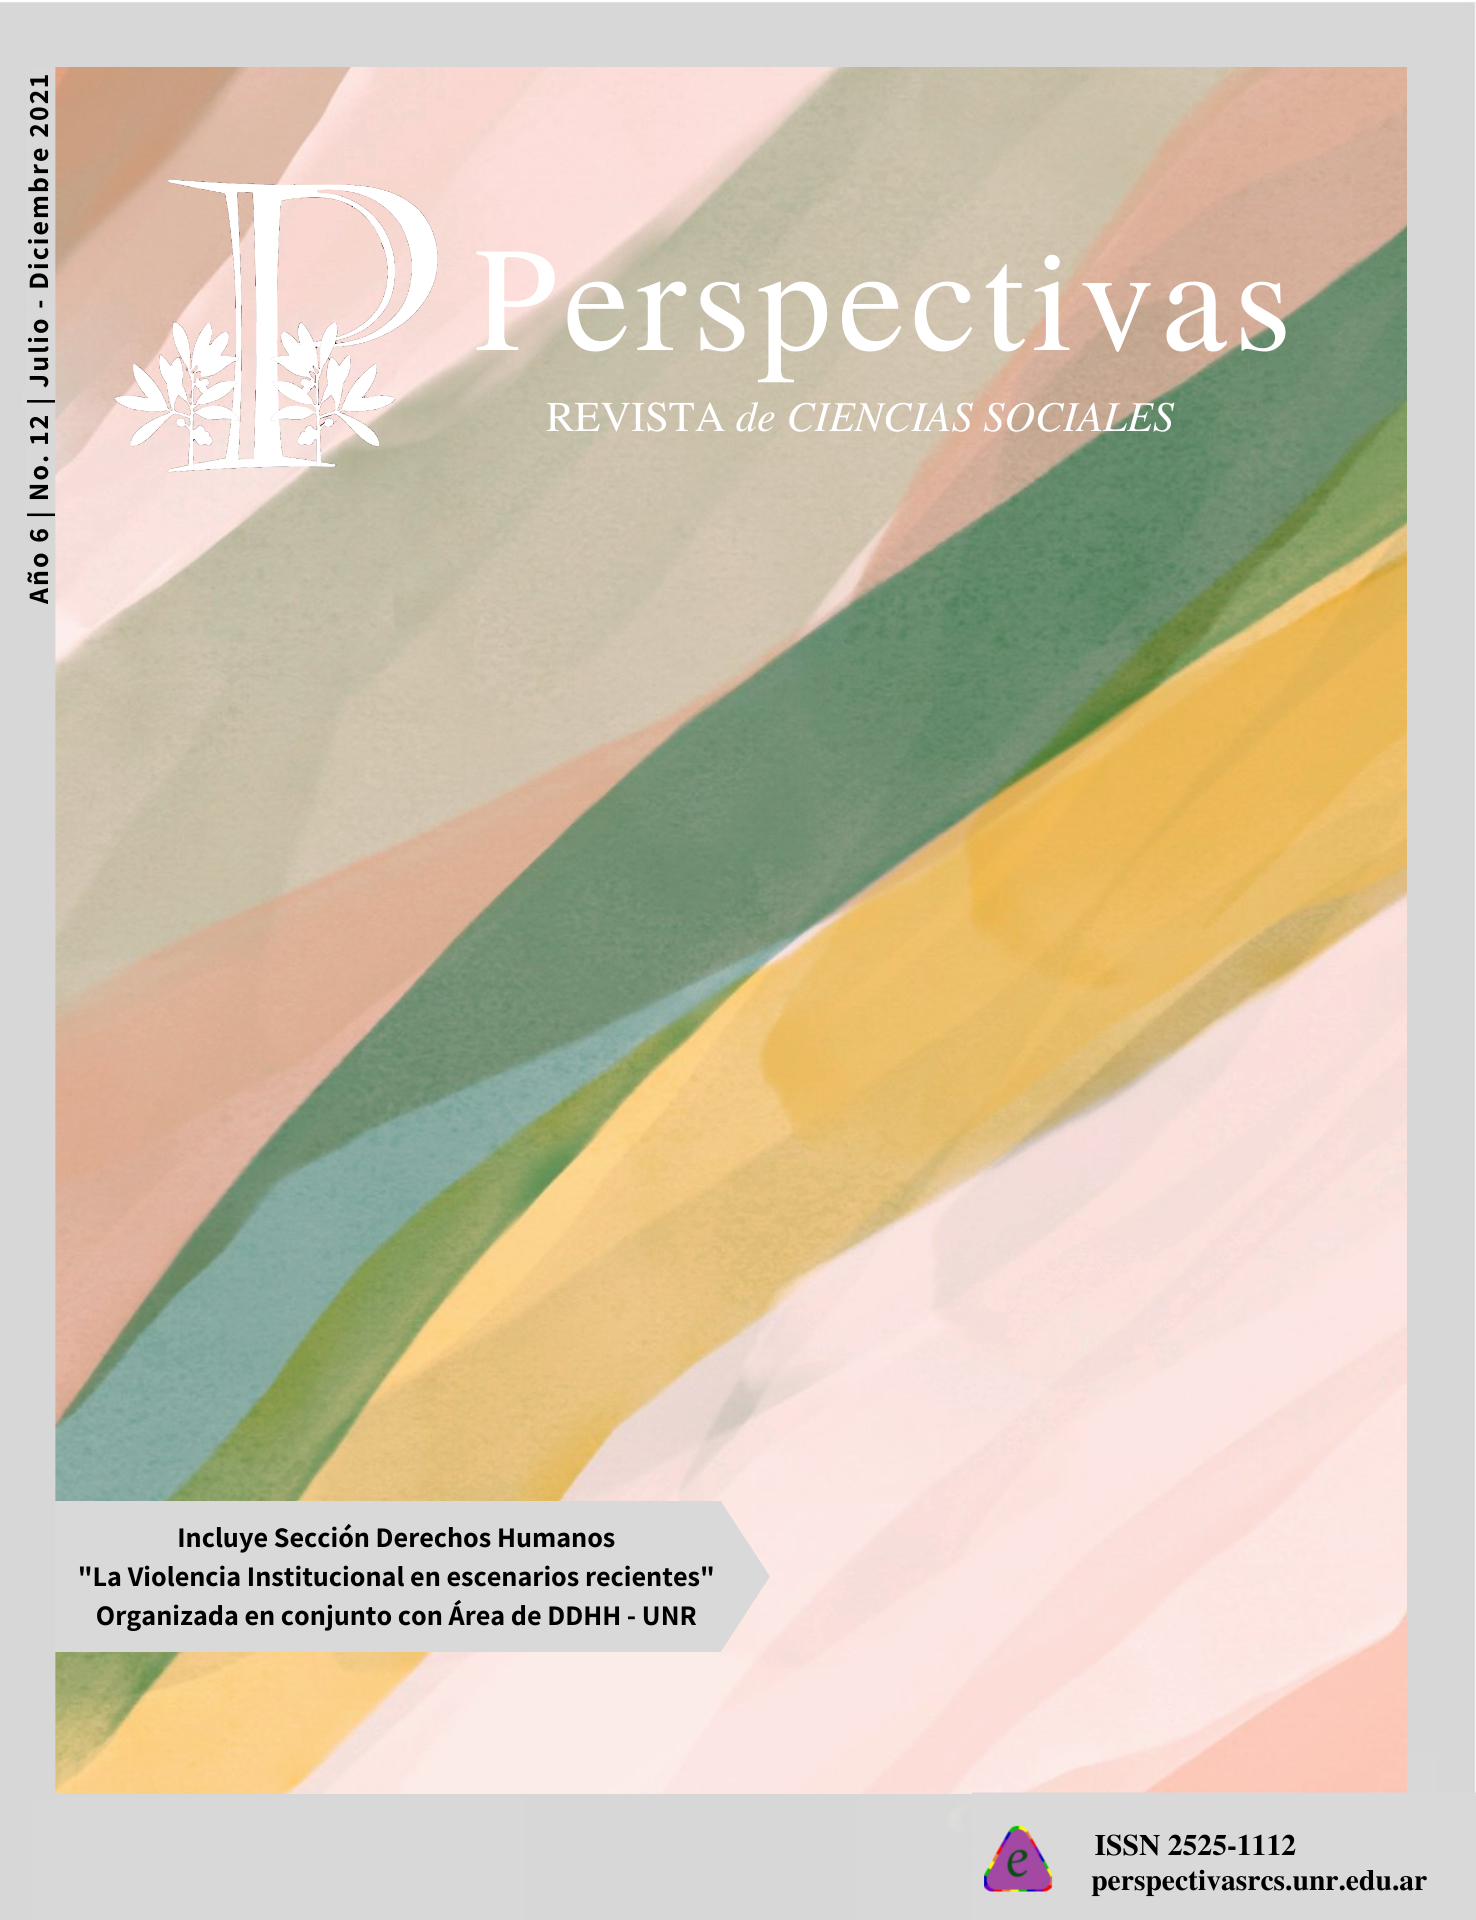 					Ver Núm. 12 (6): Perspectivas Revista de Ciencias Sociales No. 12 Julio-Diciembre 2021
				